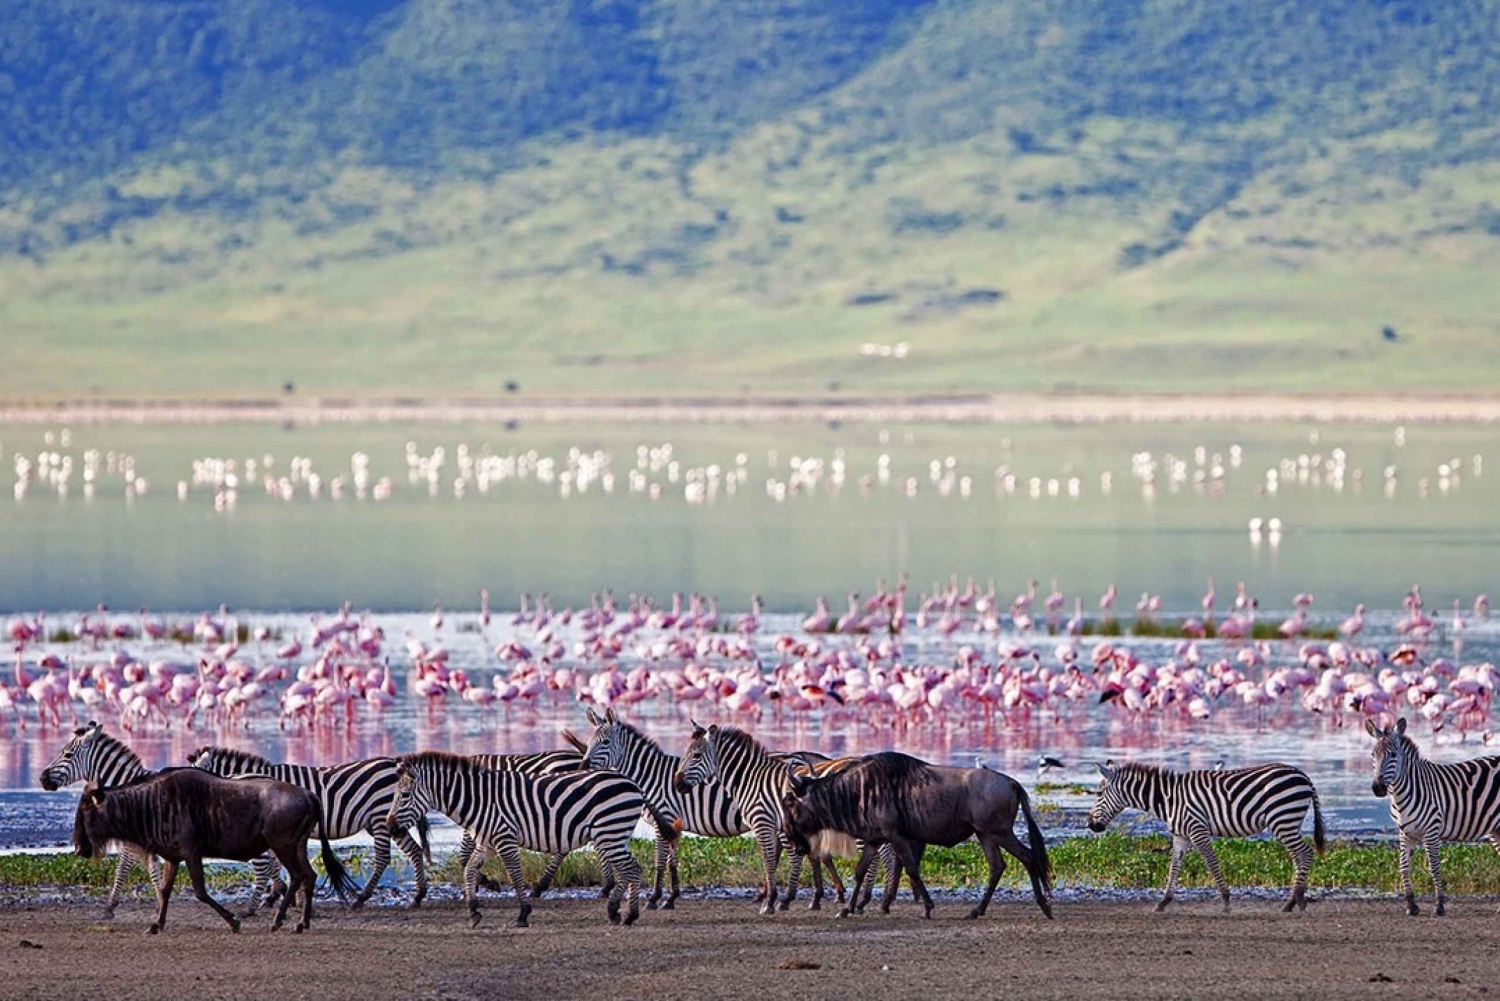 Ngorongoro Crater Full Day Trip